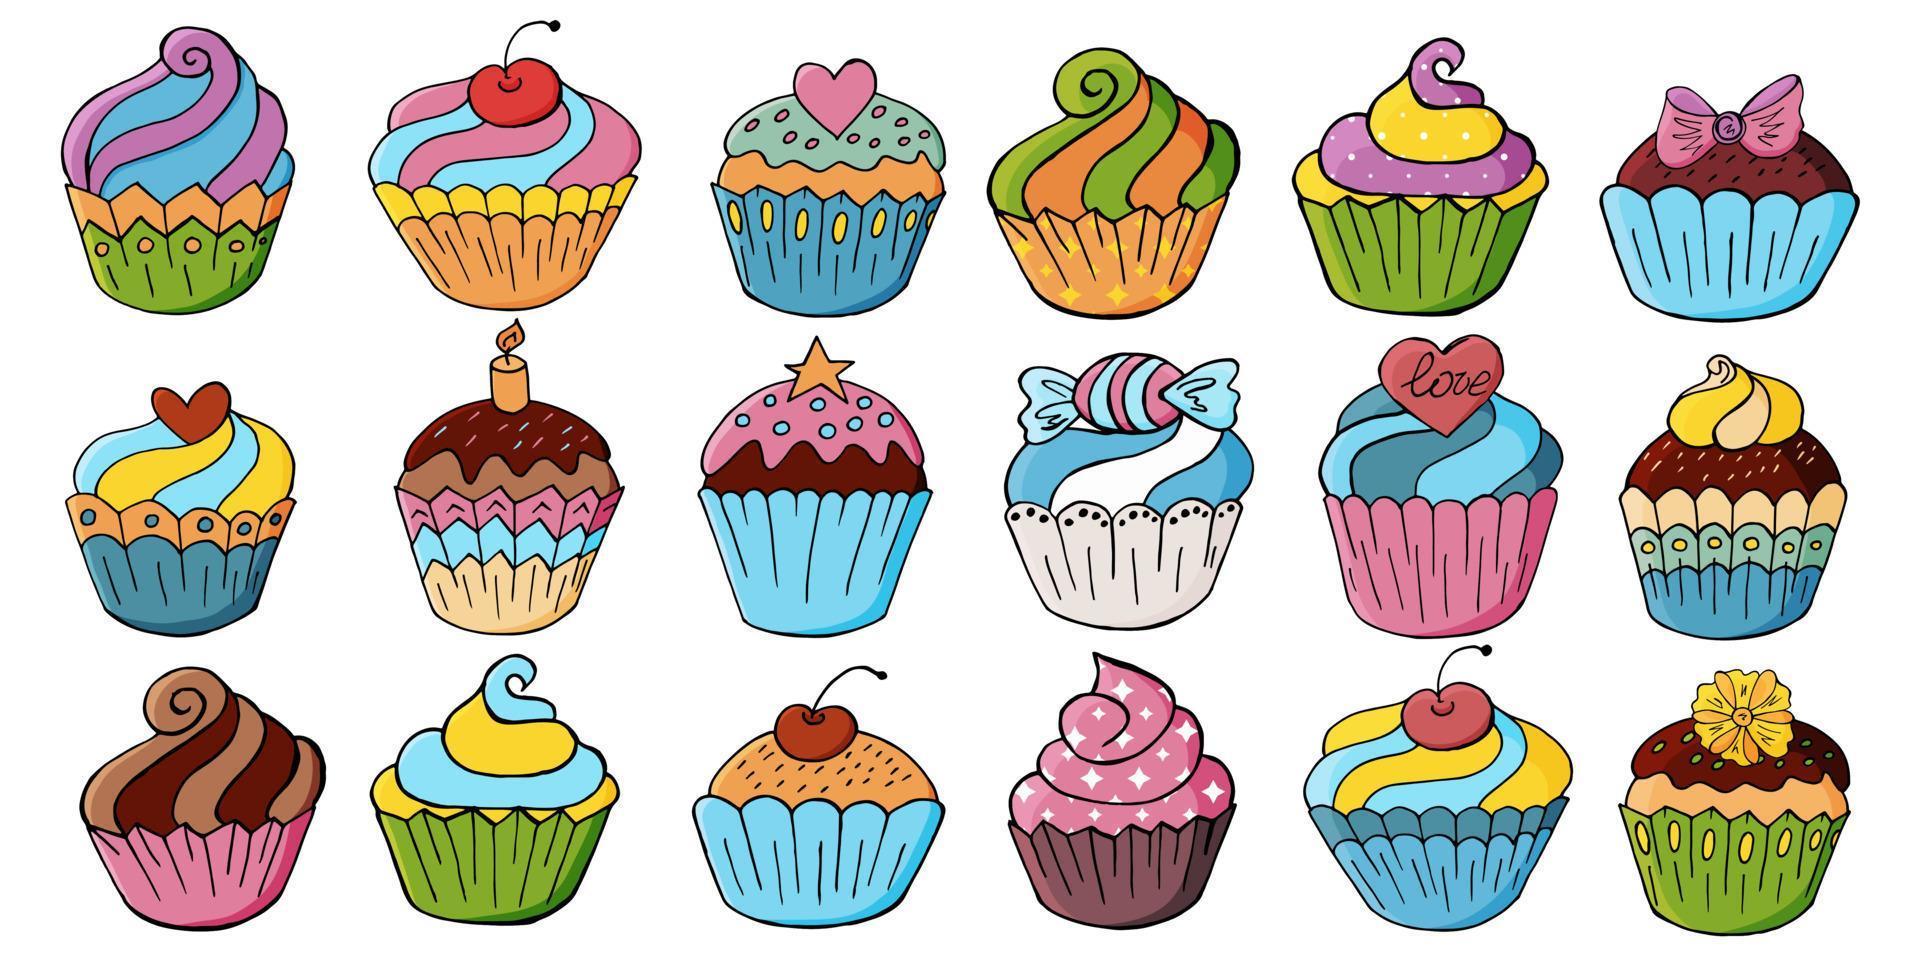 ensemble d'icônes de cupcakes, muffins dans un style de dessin à la main. collection d'illustrations vectorielles pour votre conception. pâtisseries sucrées, muffins vecteur